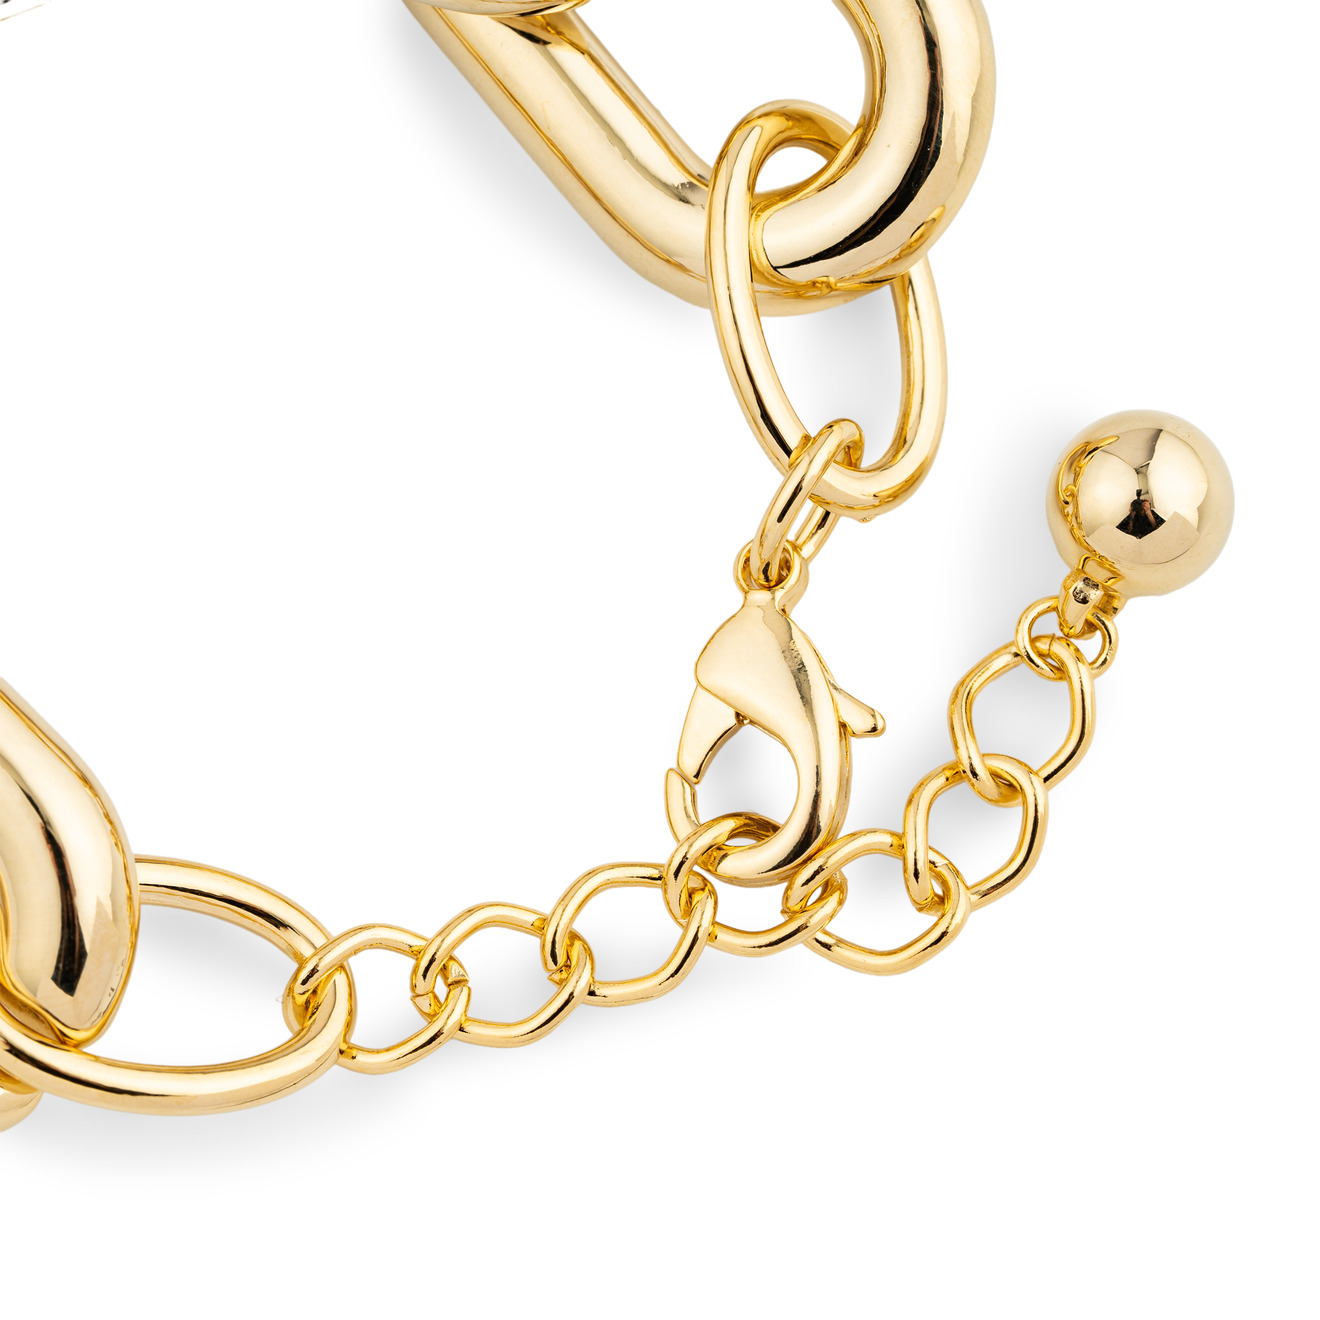 Aqua Золотистый браслет-цепь из крупных звеньев aqua золотистый браслет цепь из крупных звеньев